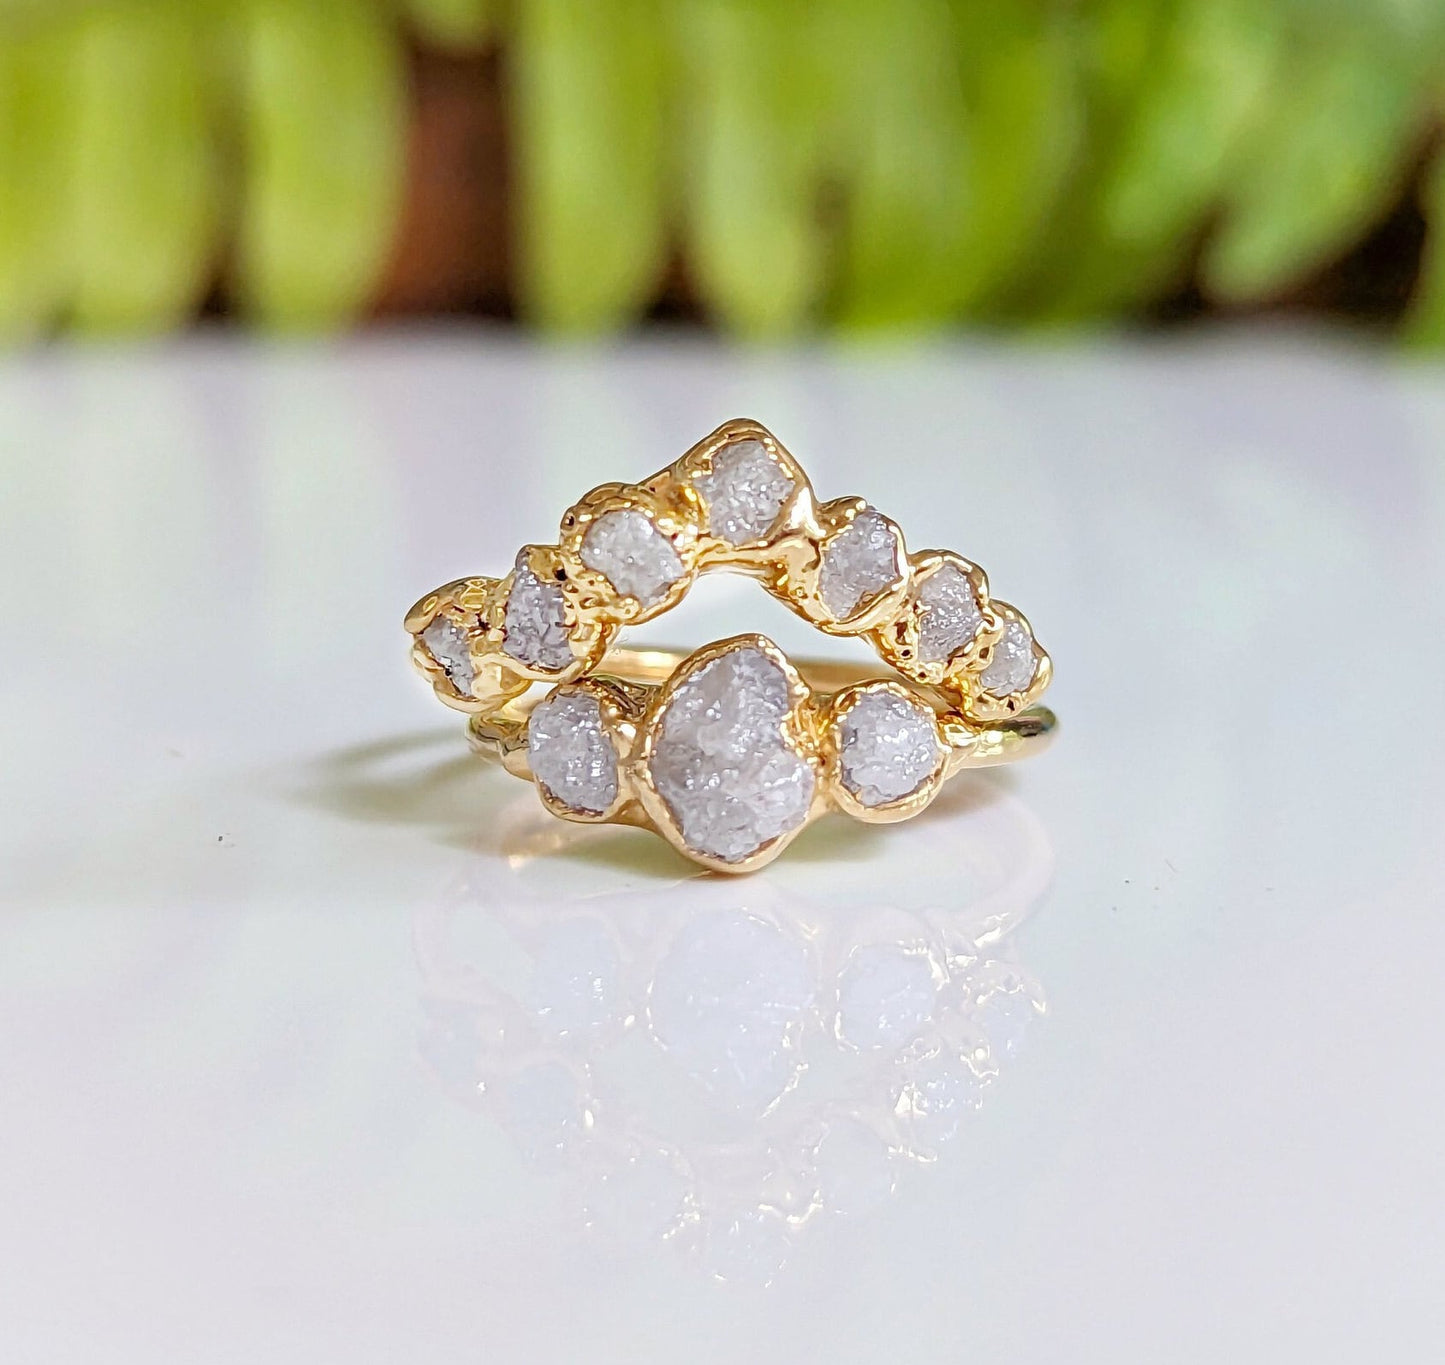 Raw uncut diamond Chevron Wedding ring set in 18k Gold